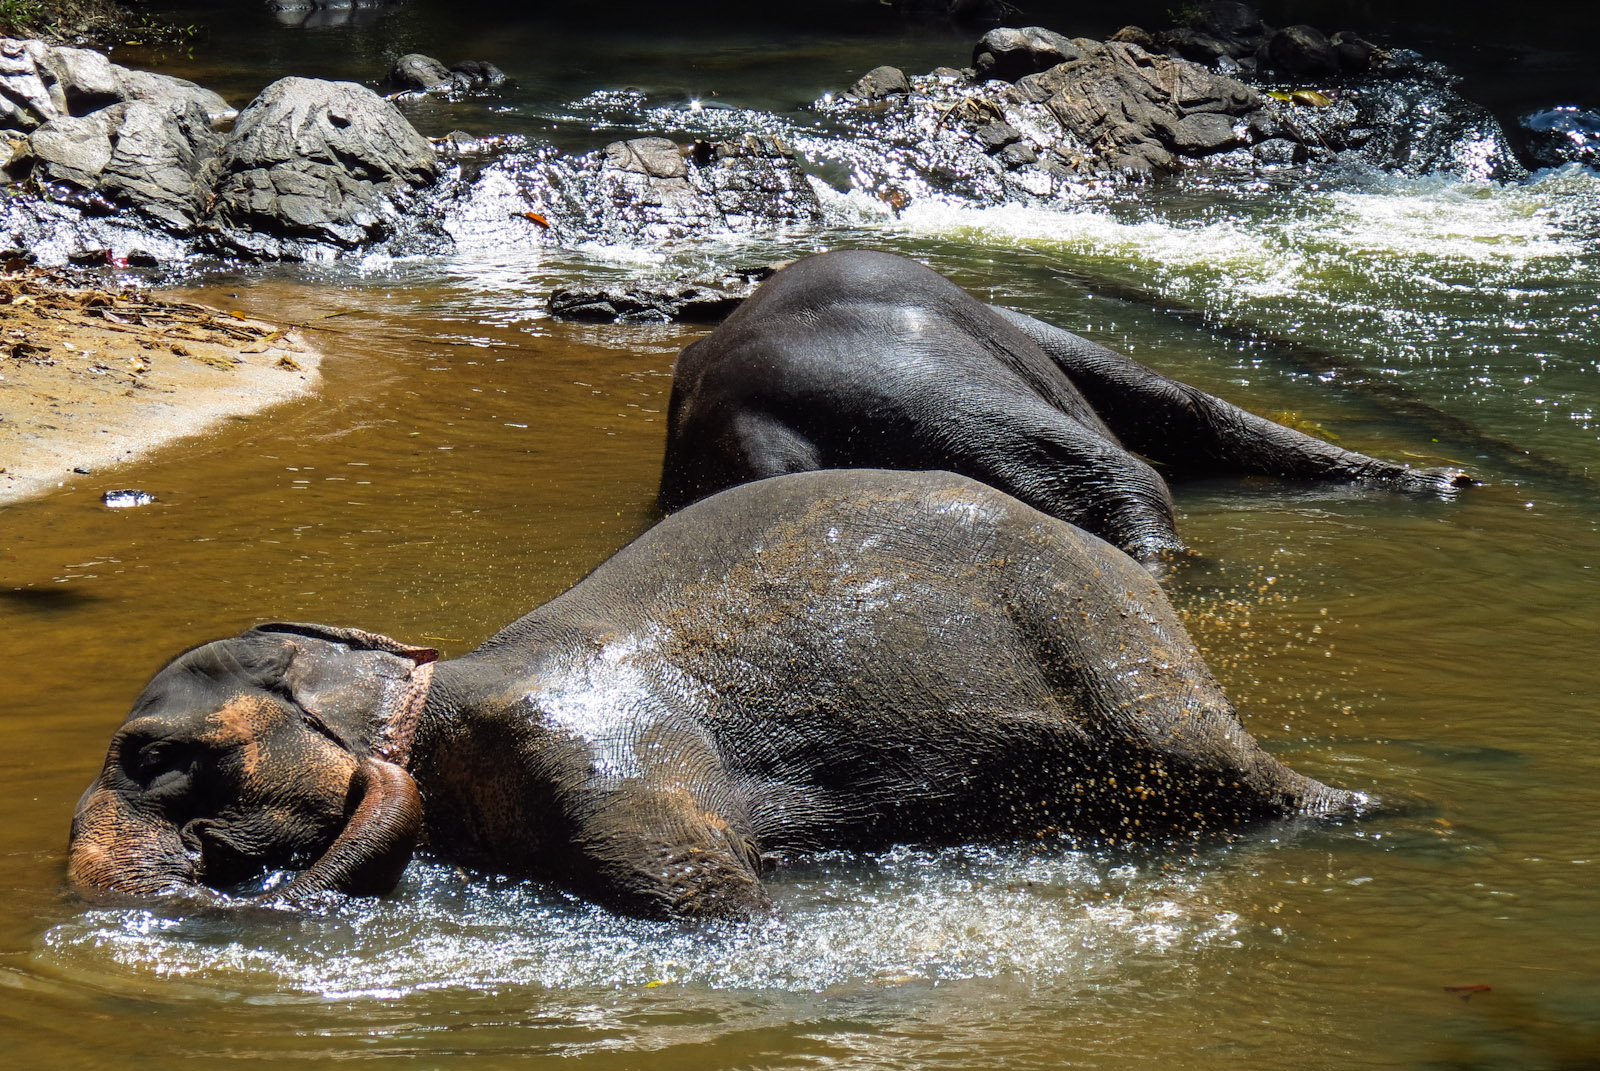 elephant-bathing-kandy